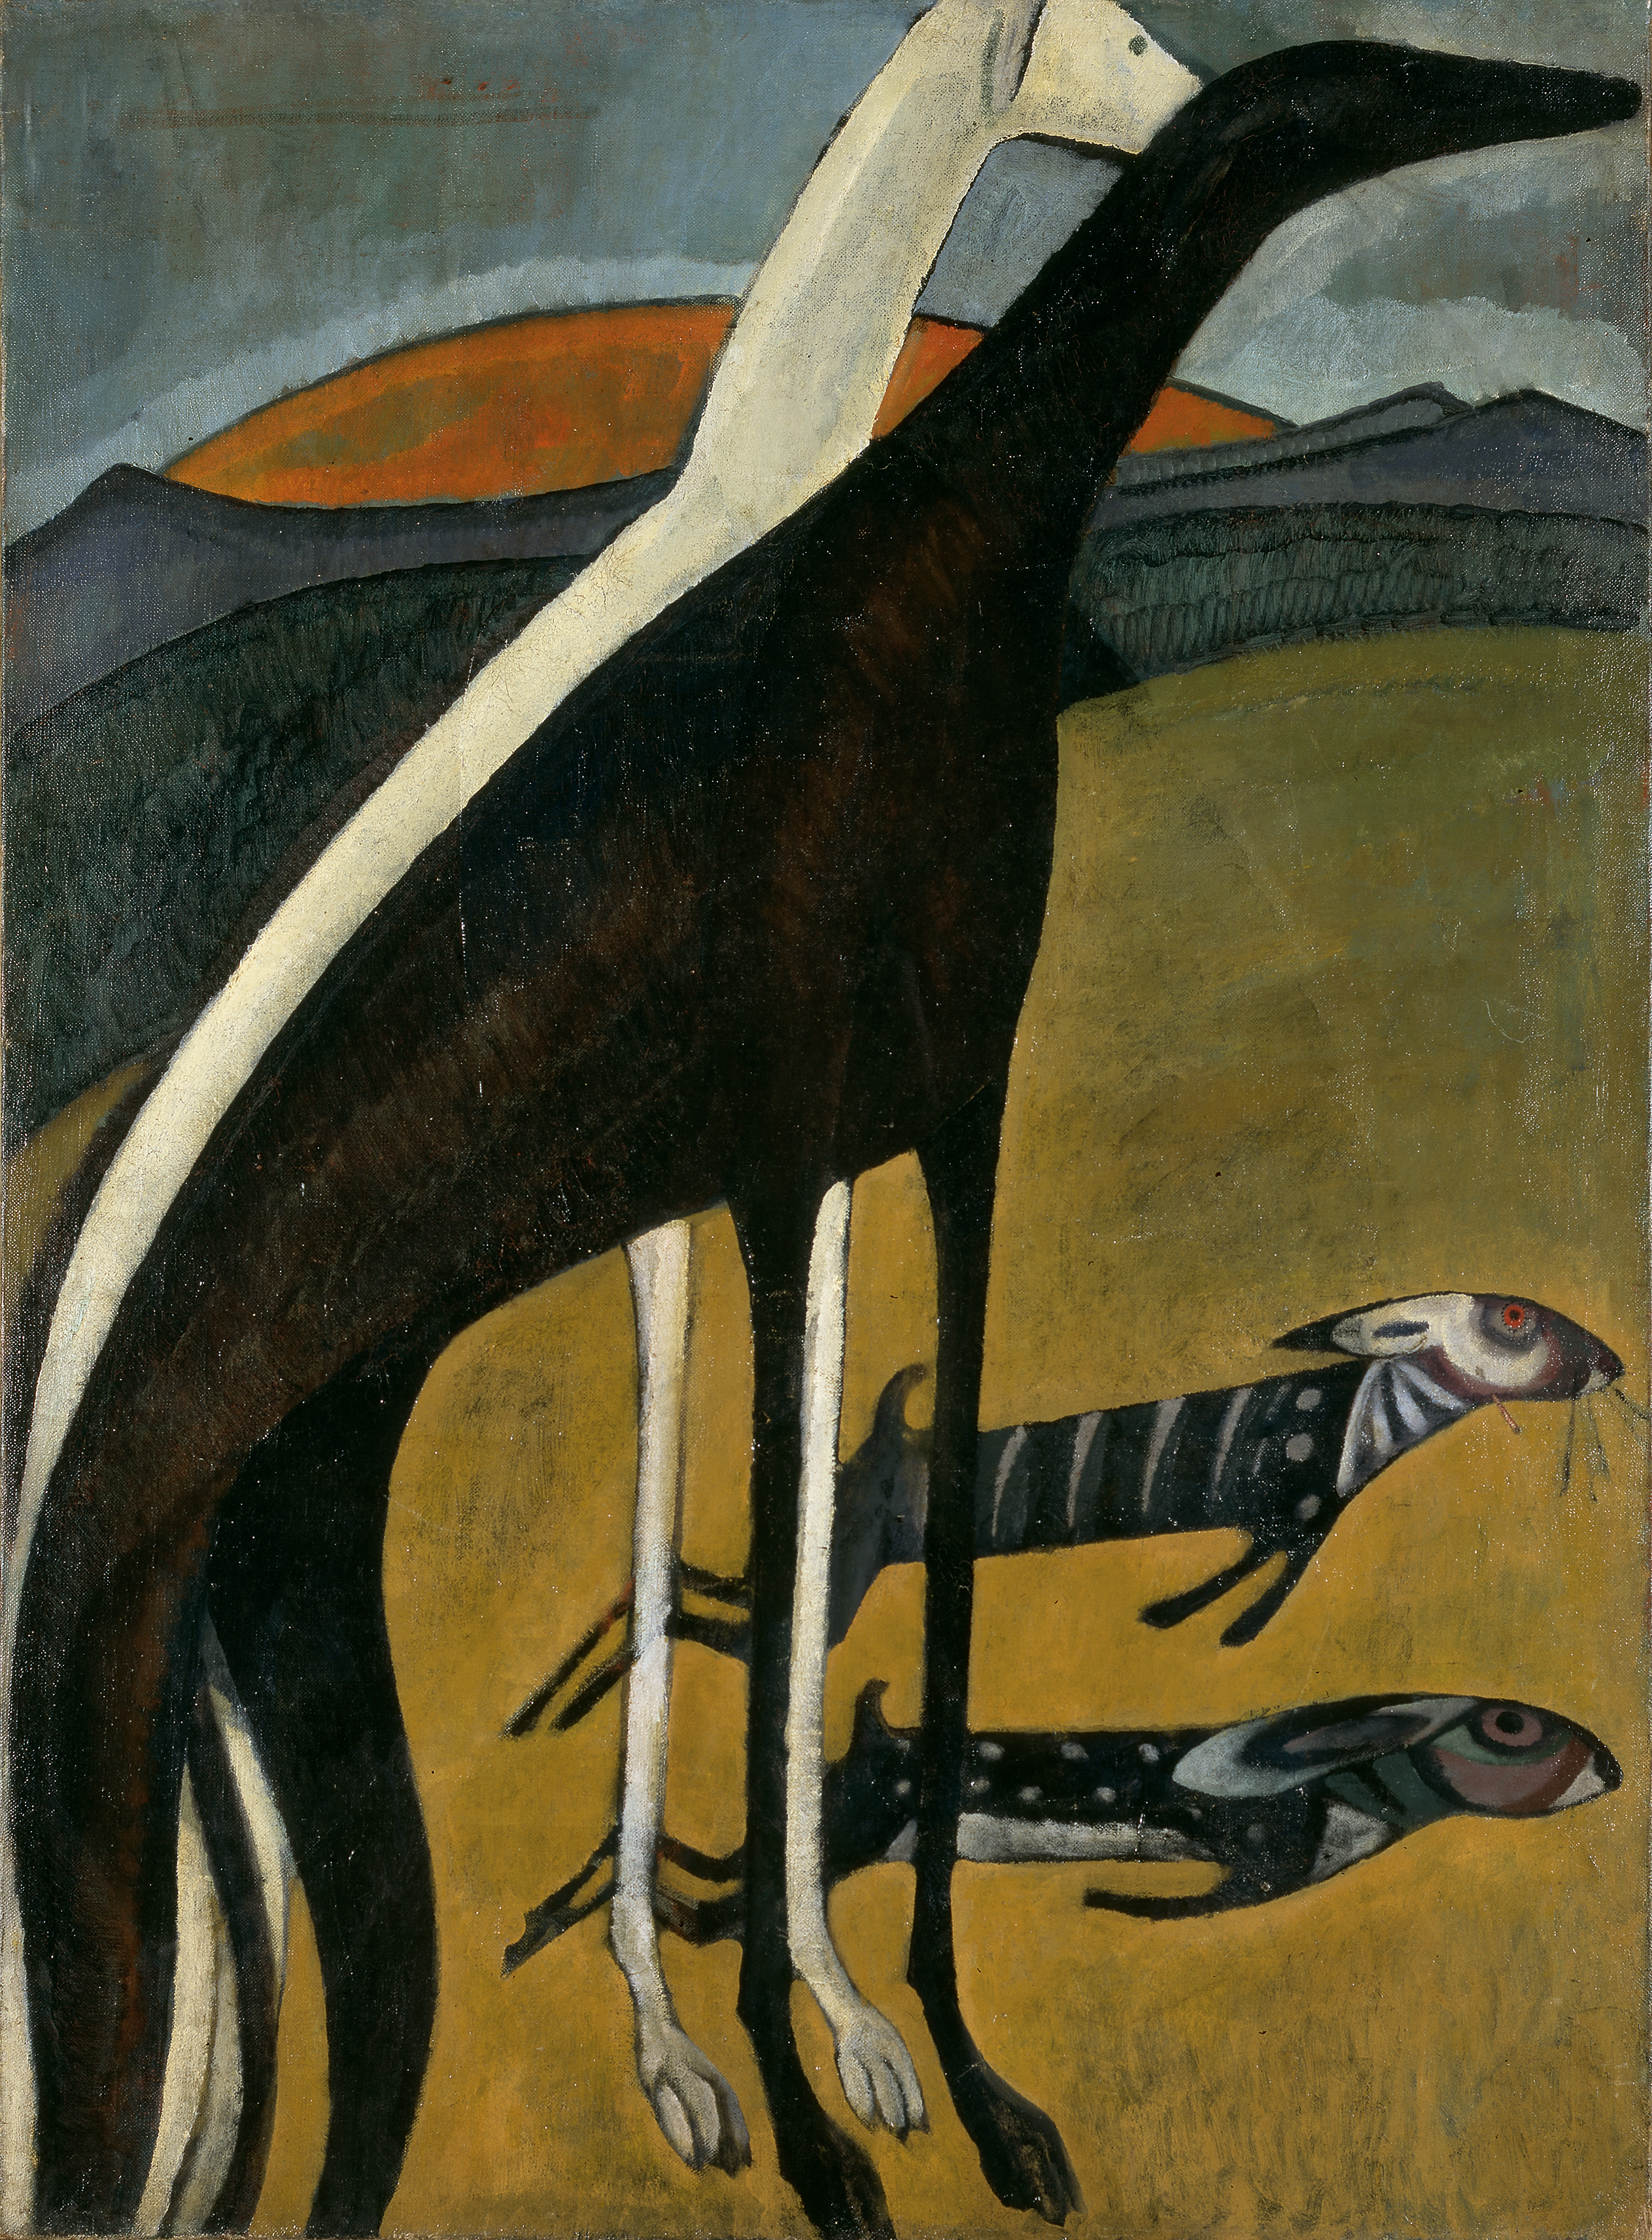 Борзые by Амадеу ди Соза-Кардозу - 1911 - 100 x 73 cm 